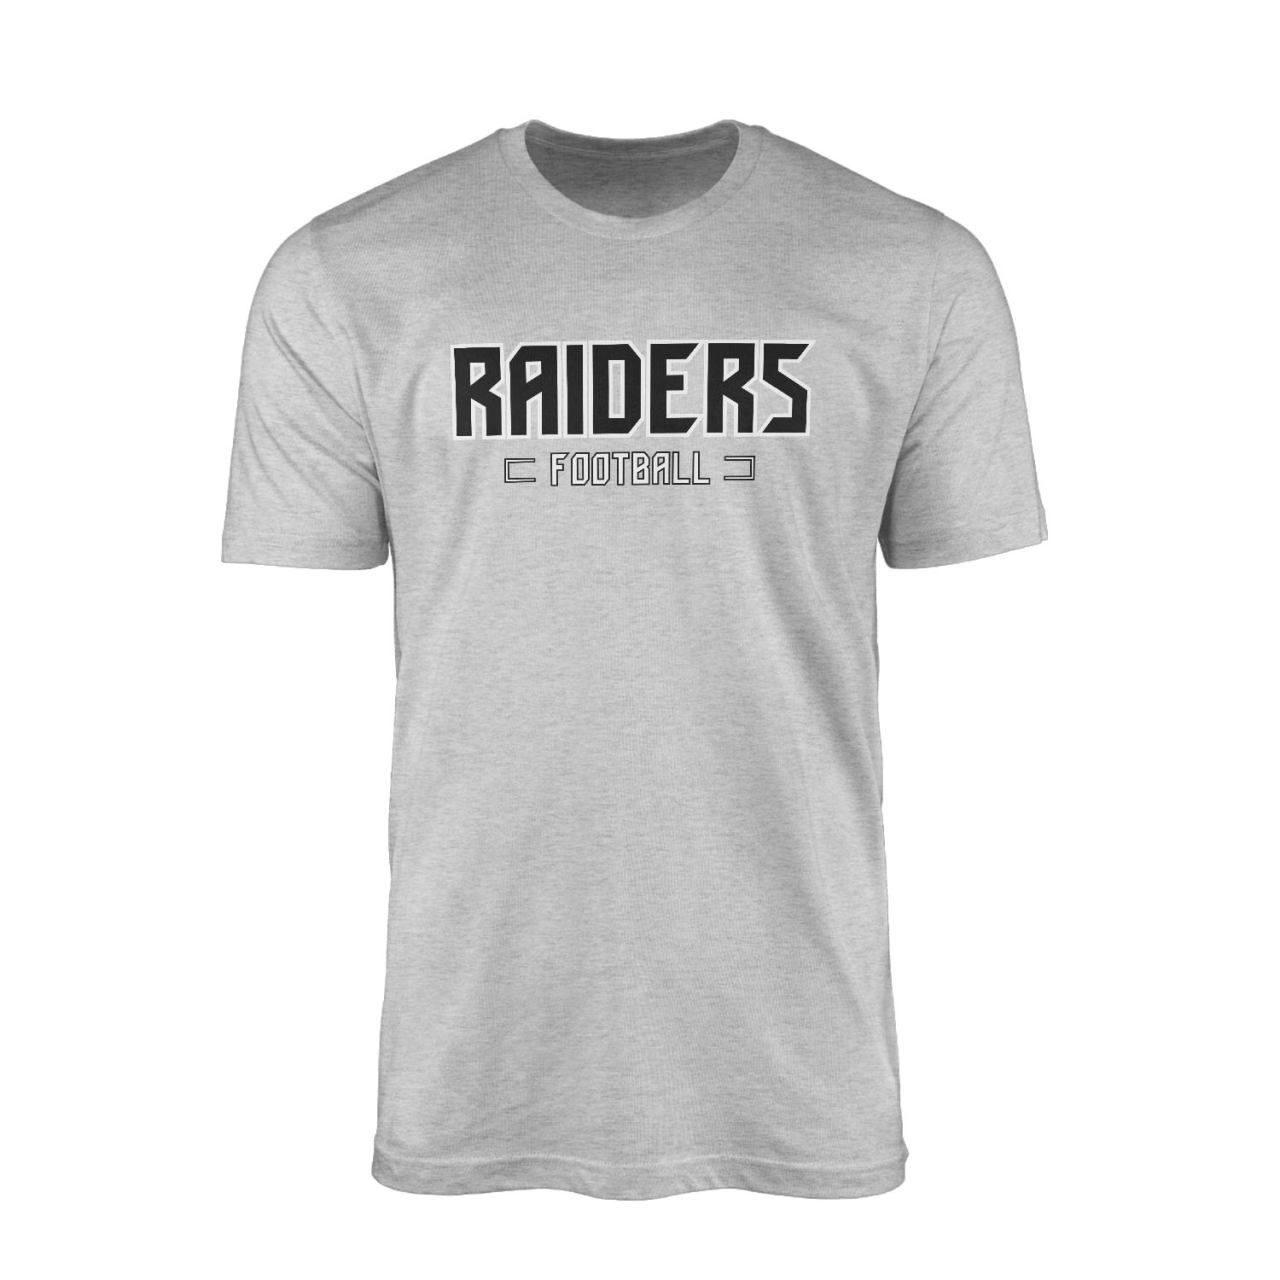 Raiders Football Gri Tshirt